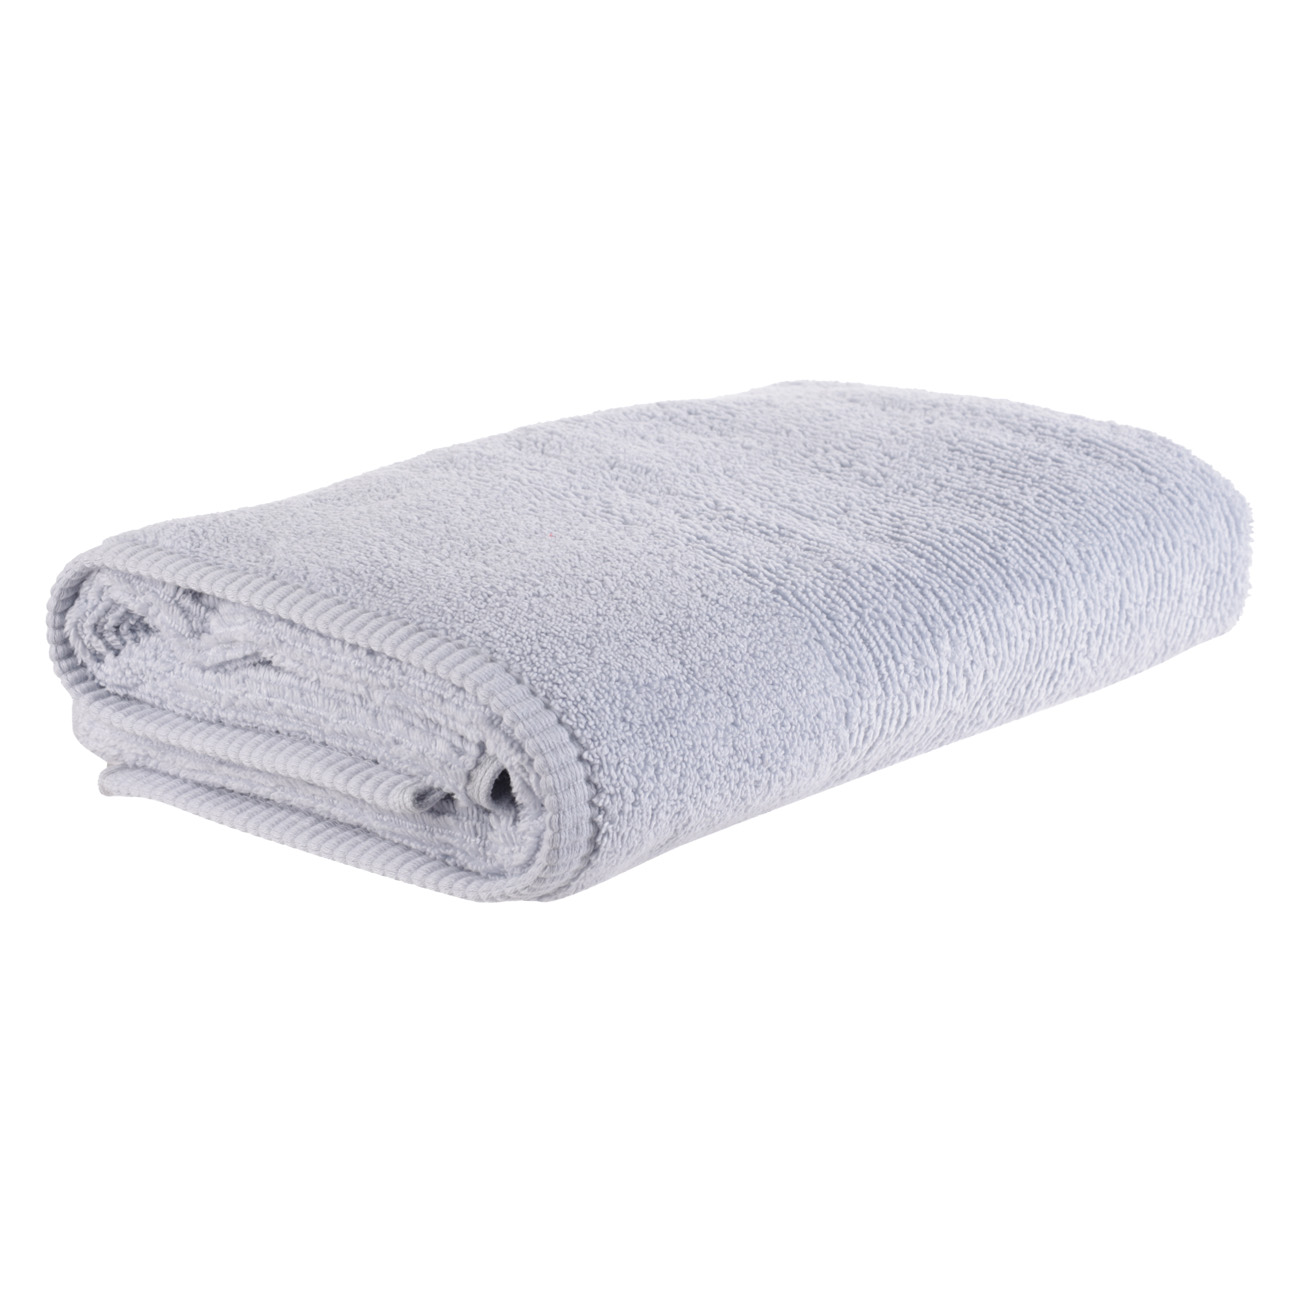 Towel, 70x140 cm, cotton, blue, Terry cotton изображение № 3